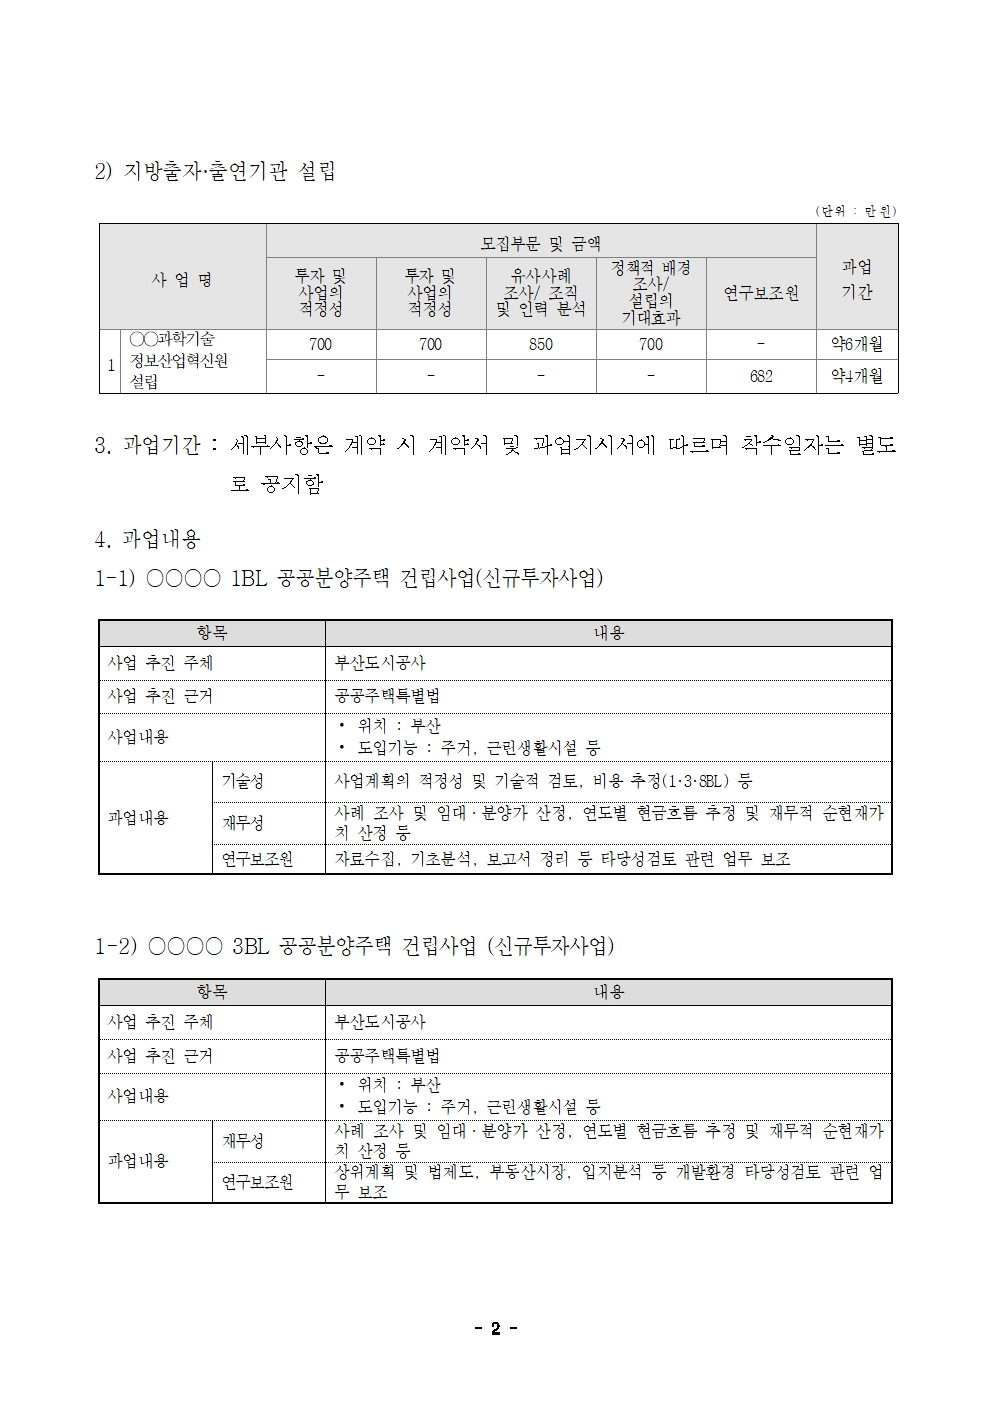 23-4차(5월) 외부연구원 모집 공고_최종 002